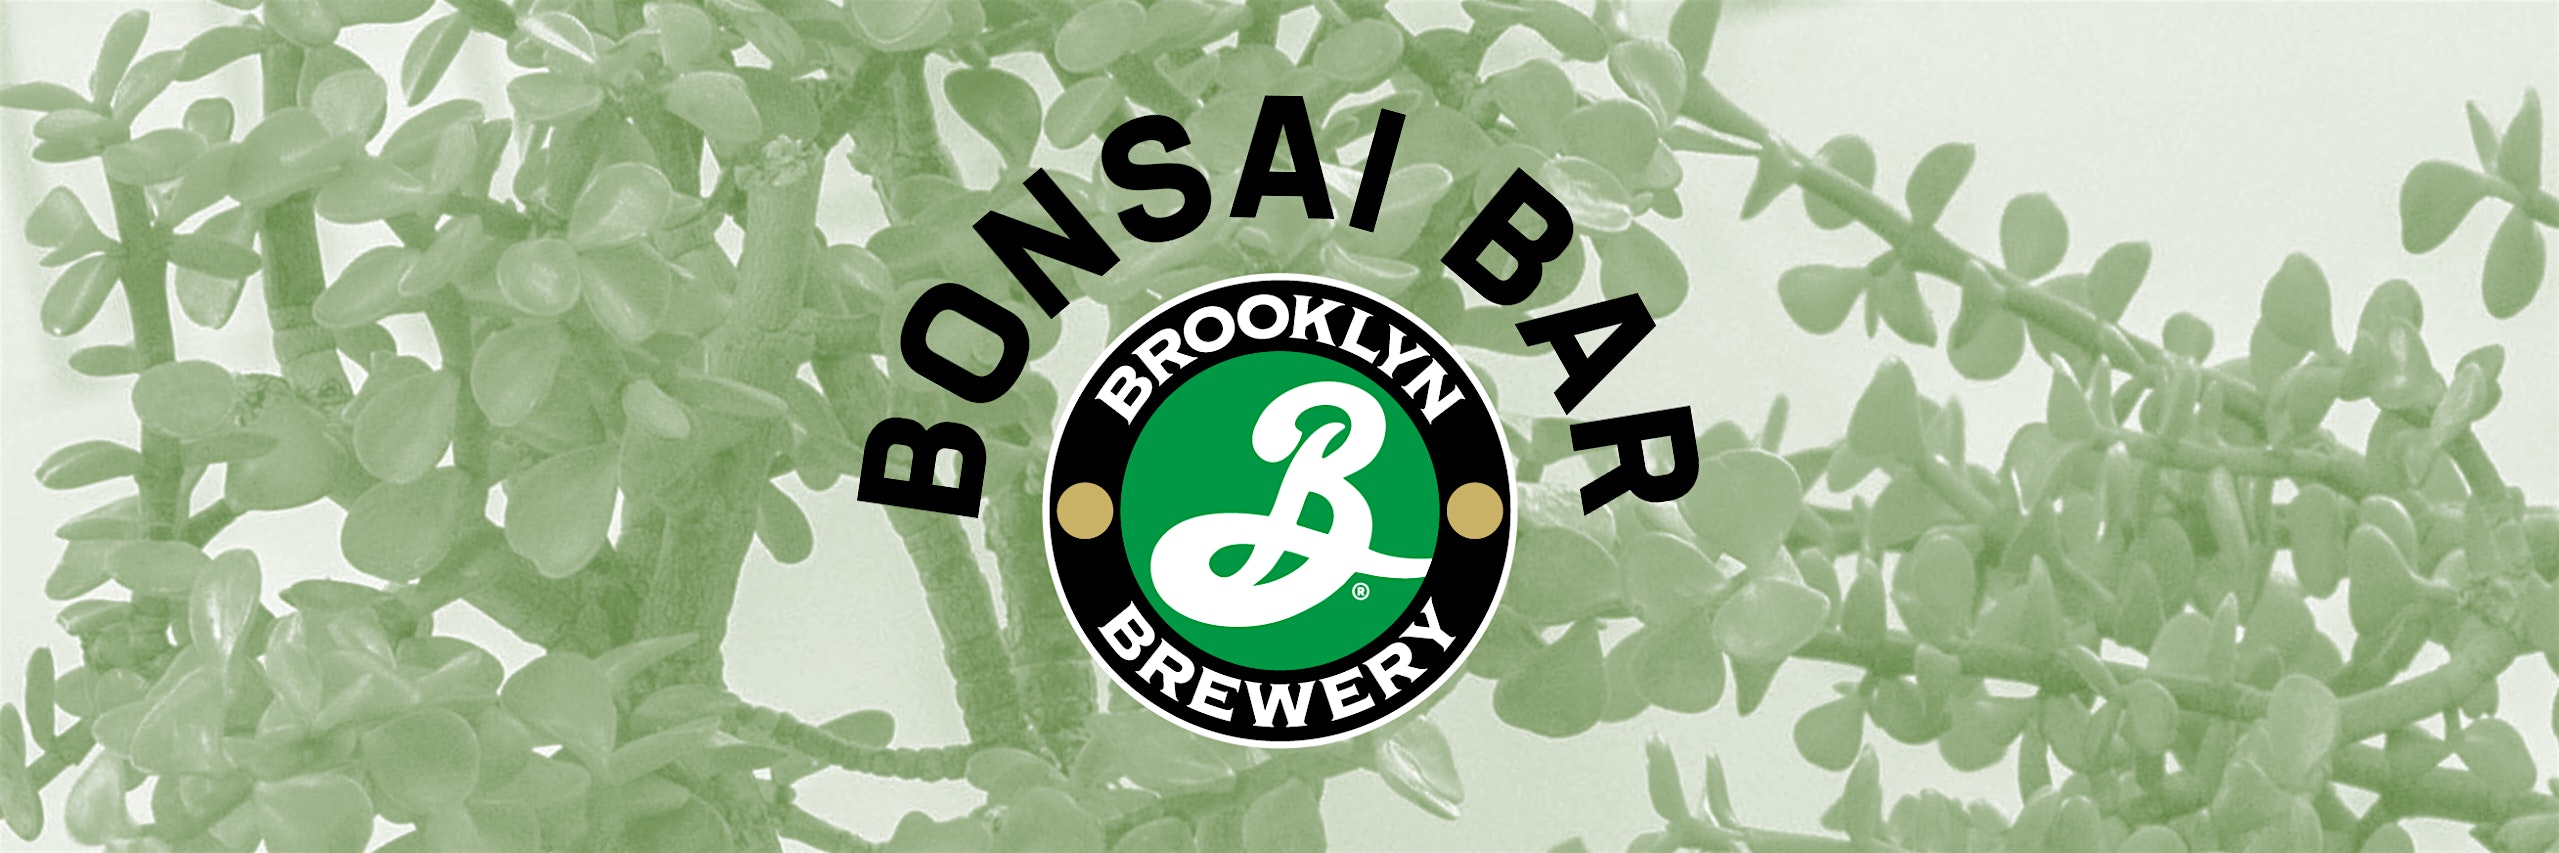 Bonsai Bar @ Brooklyn Brewery